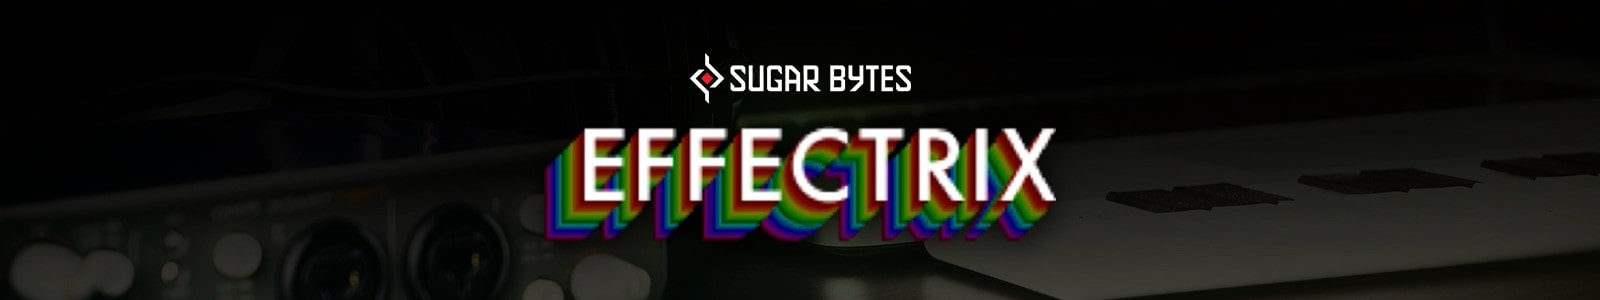 Effectrix by Sugar Bytes